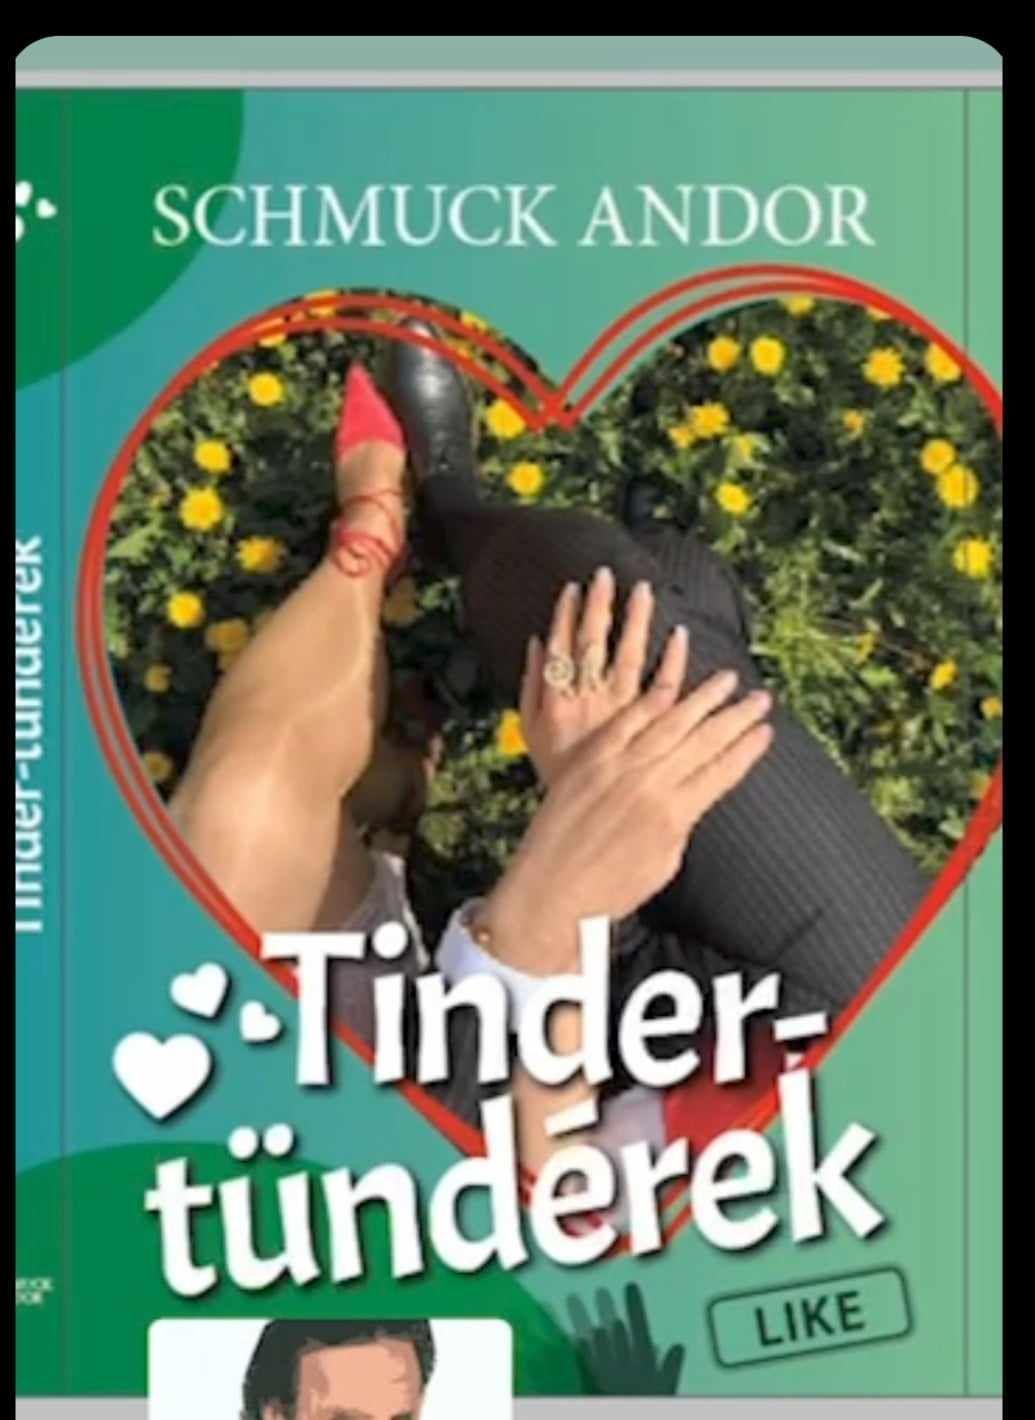 Schmuck Andor